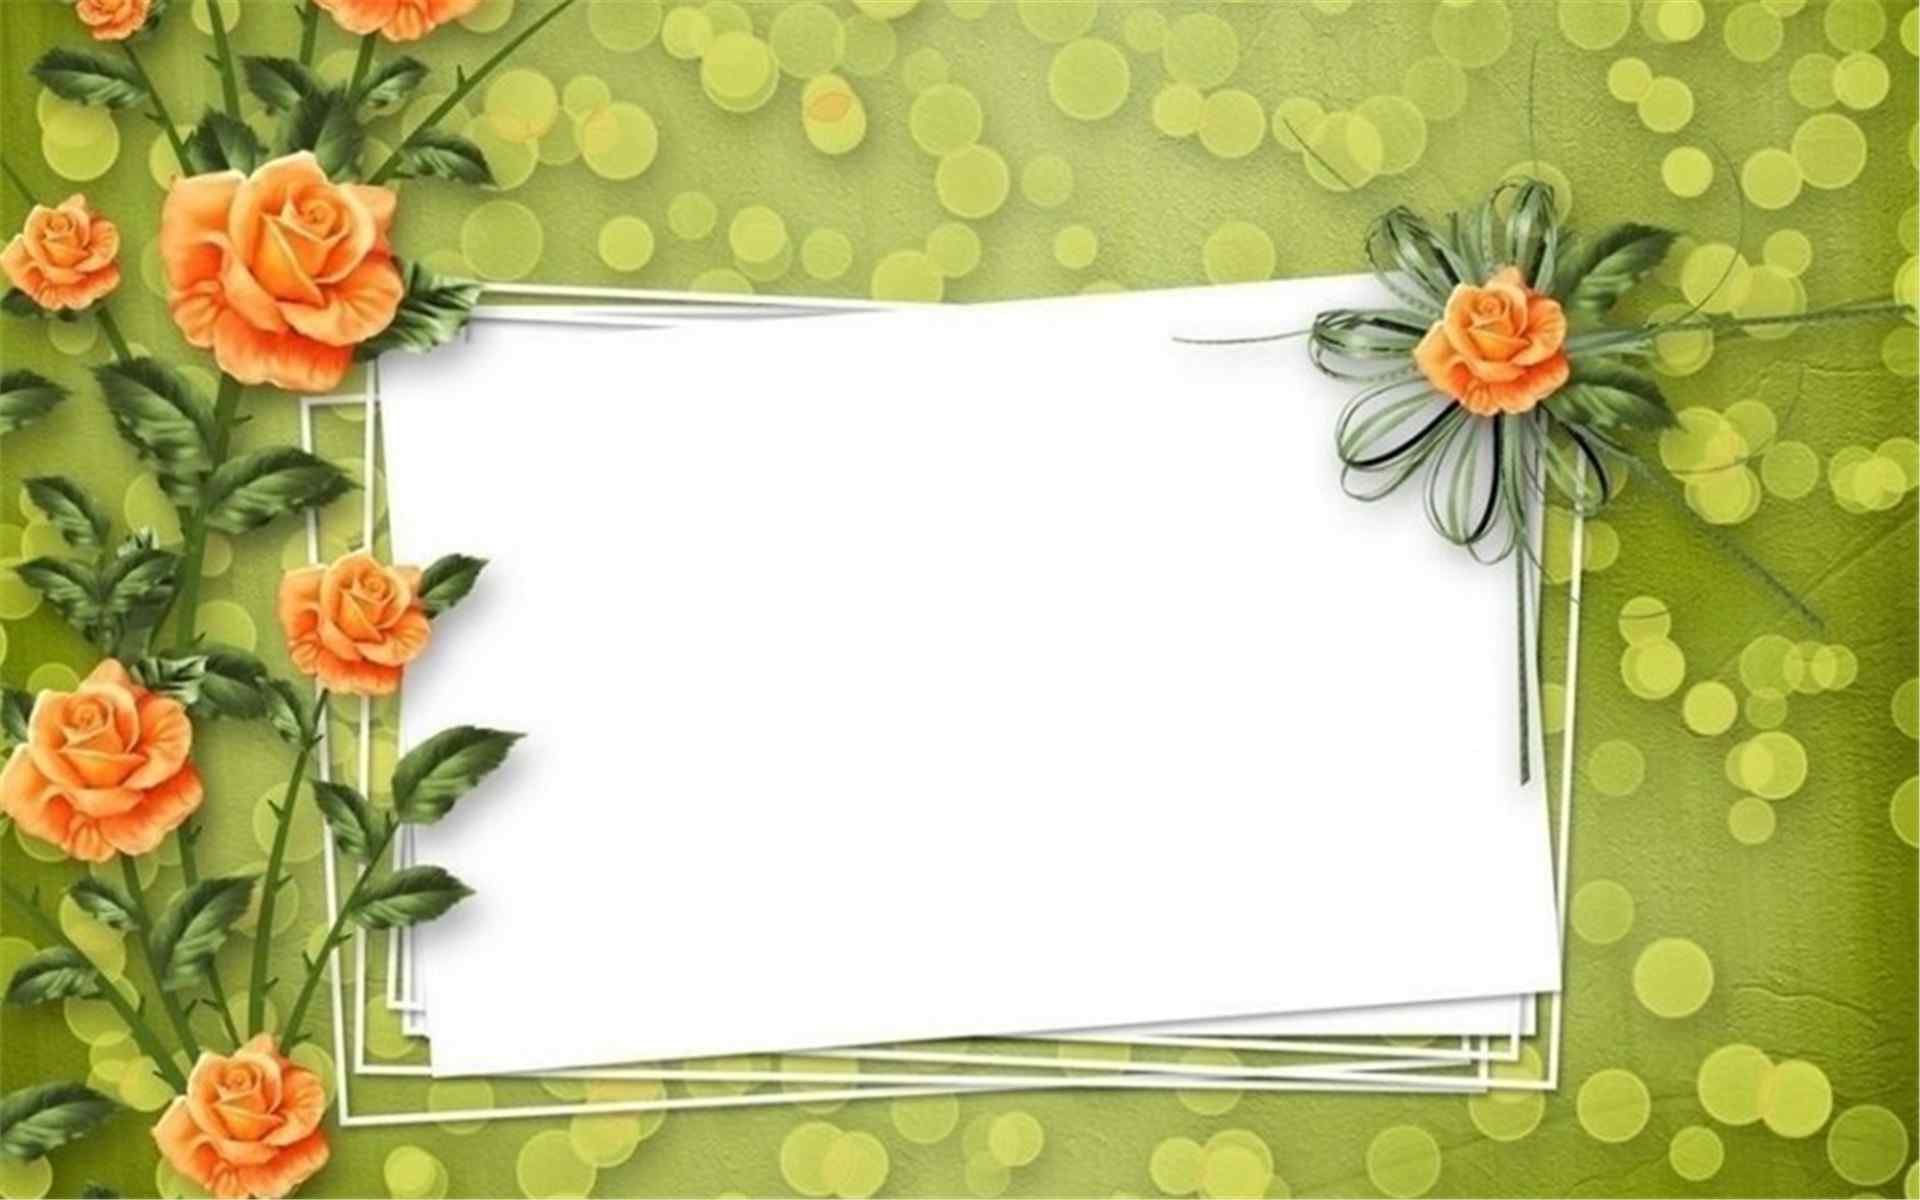 清新自然的花朵相框唯美背景电脑壁纸图片